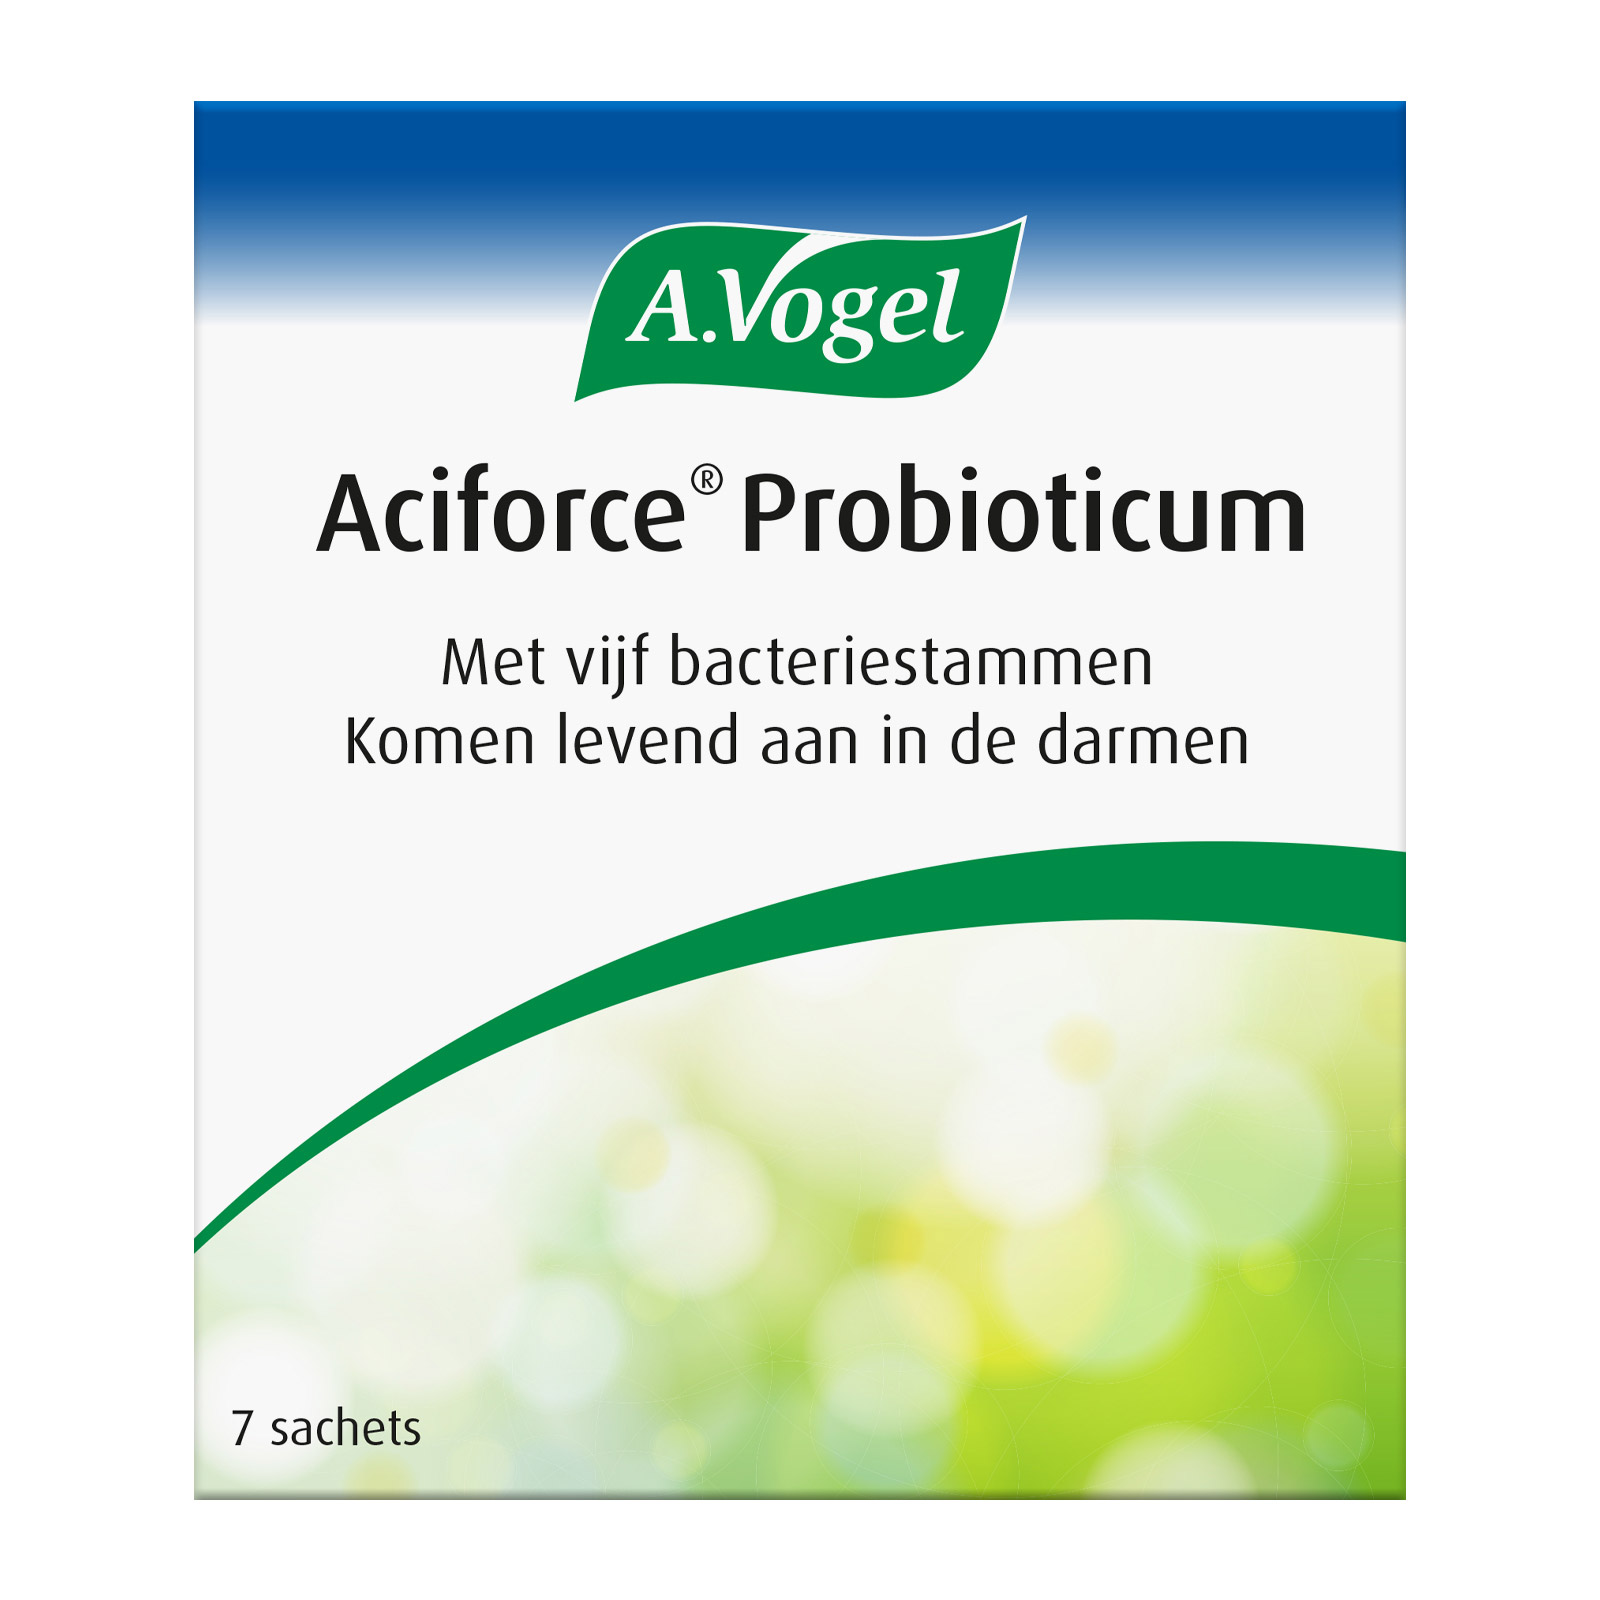 A.Vogel Aciforce Probioticum Sachets kopen